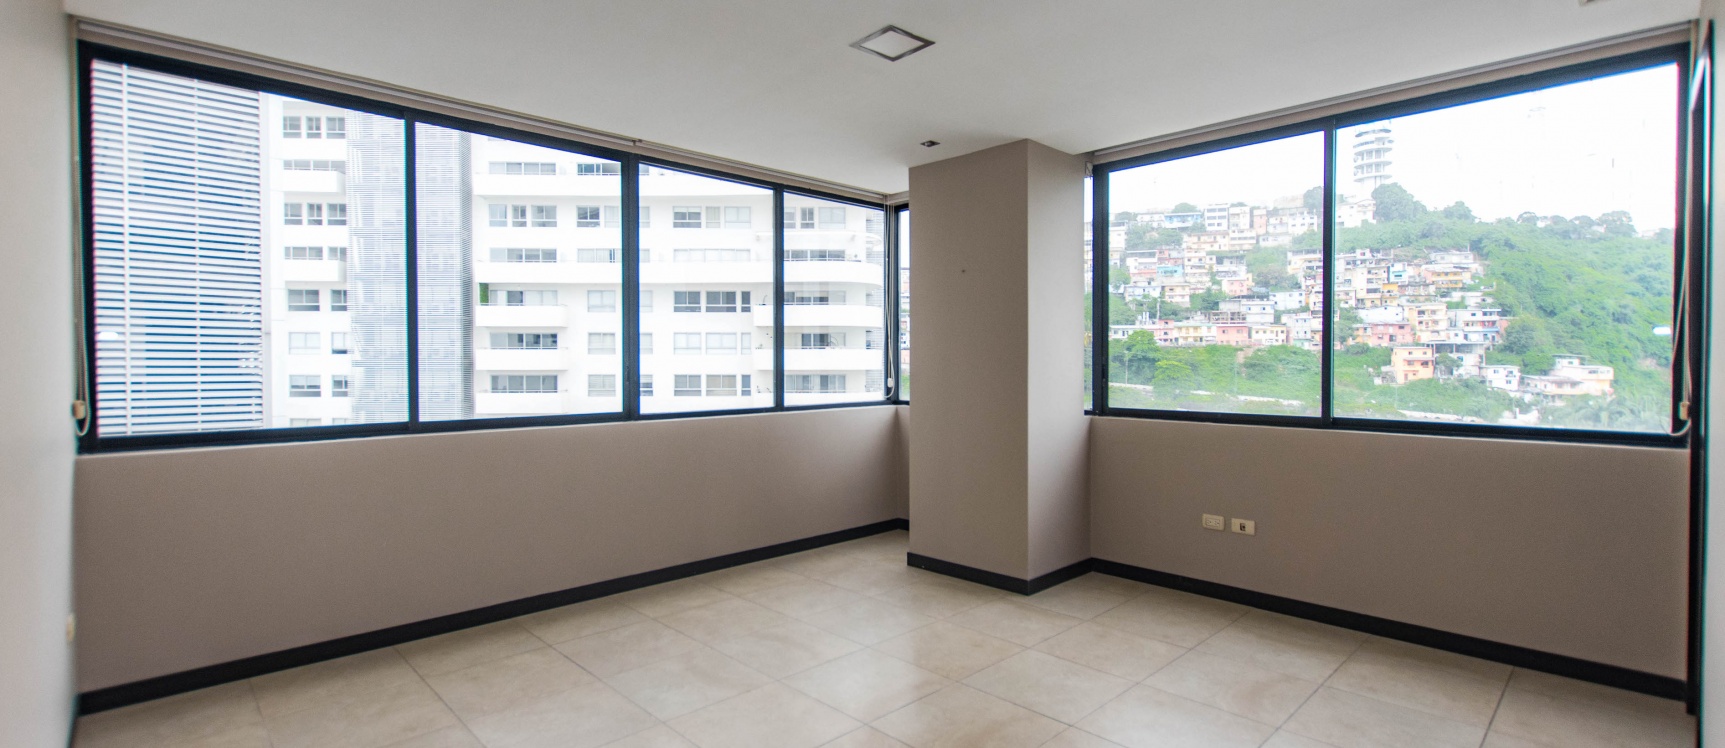 GeoBienes - Departamento en venta ubicado en Torres Bellini II, Puerto Santa Ana - Plusvalia Guayaquil Casas de venta y alquiler Inmobiliaria Ecuador